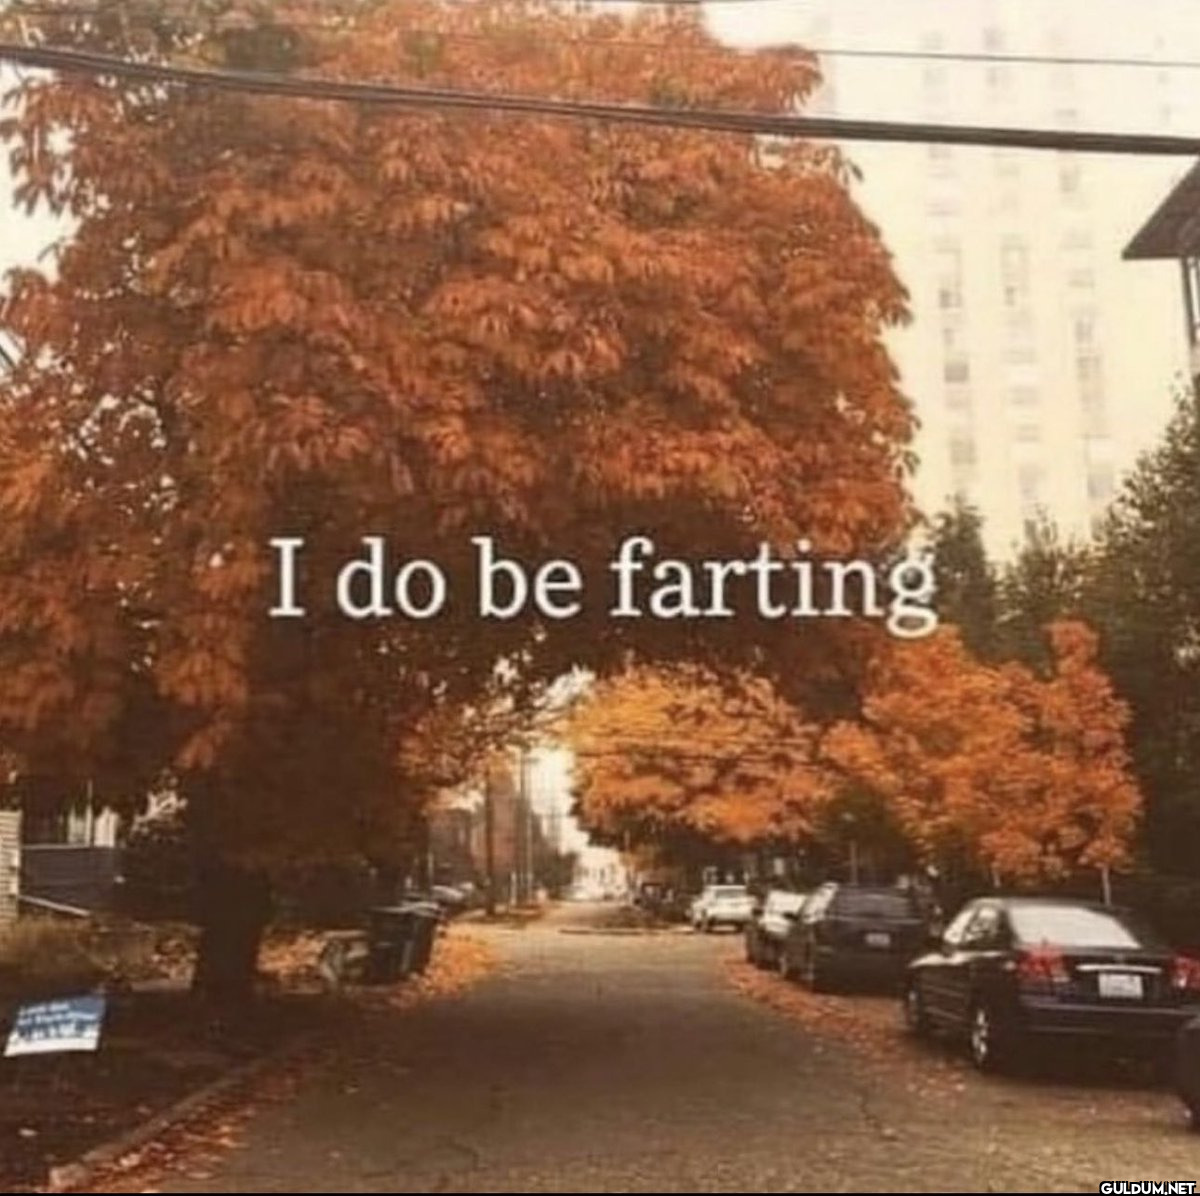 I do be farting